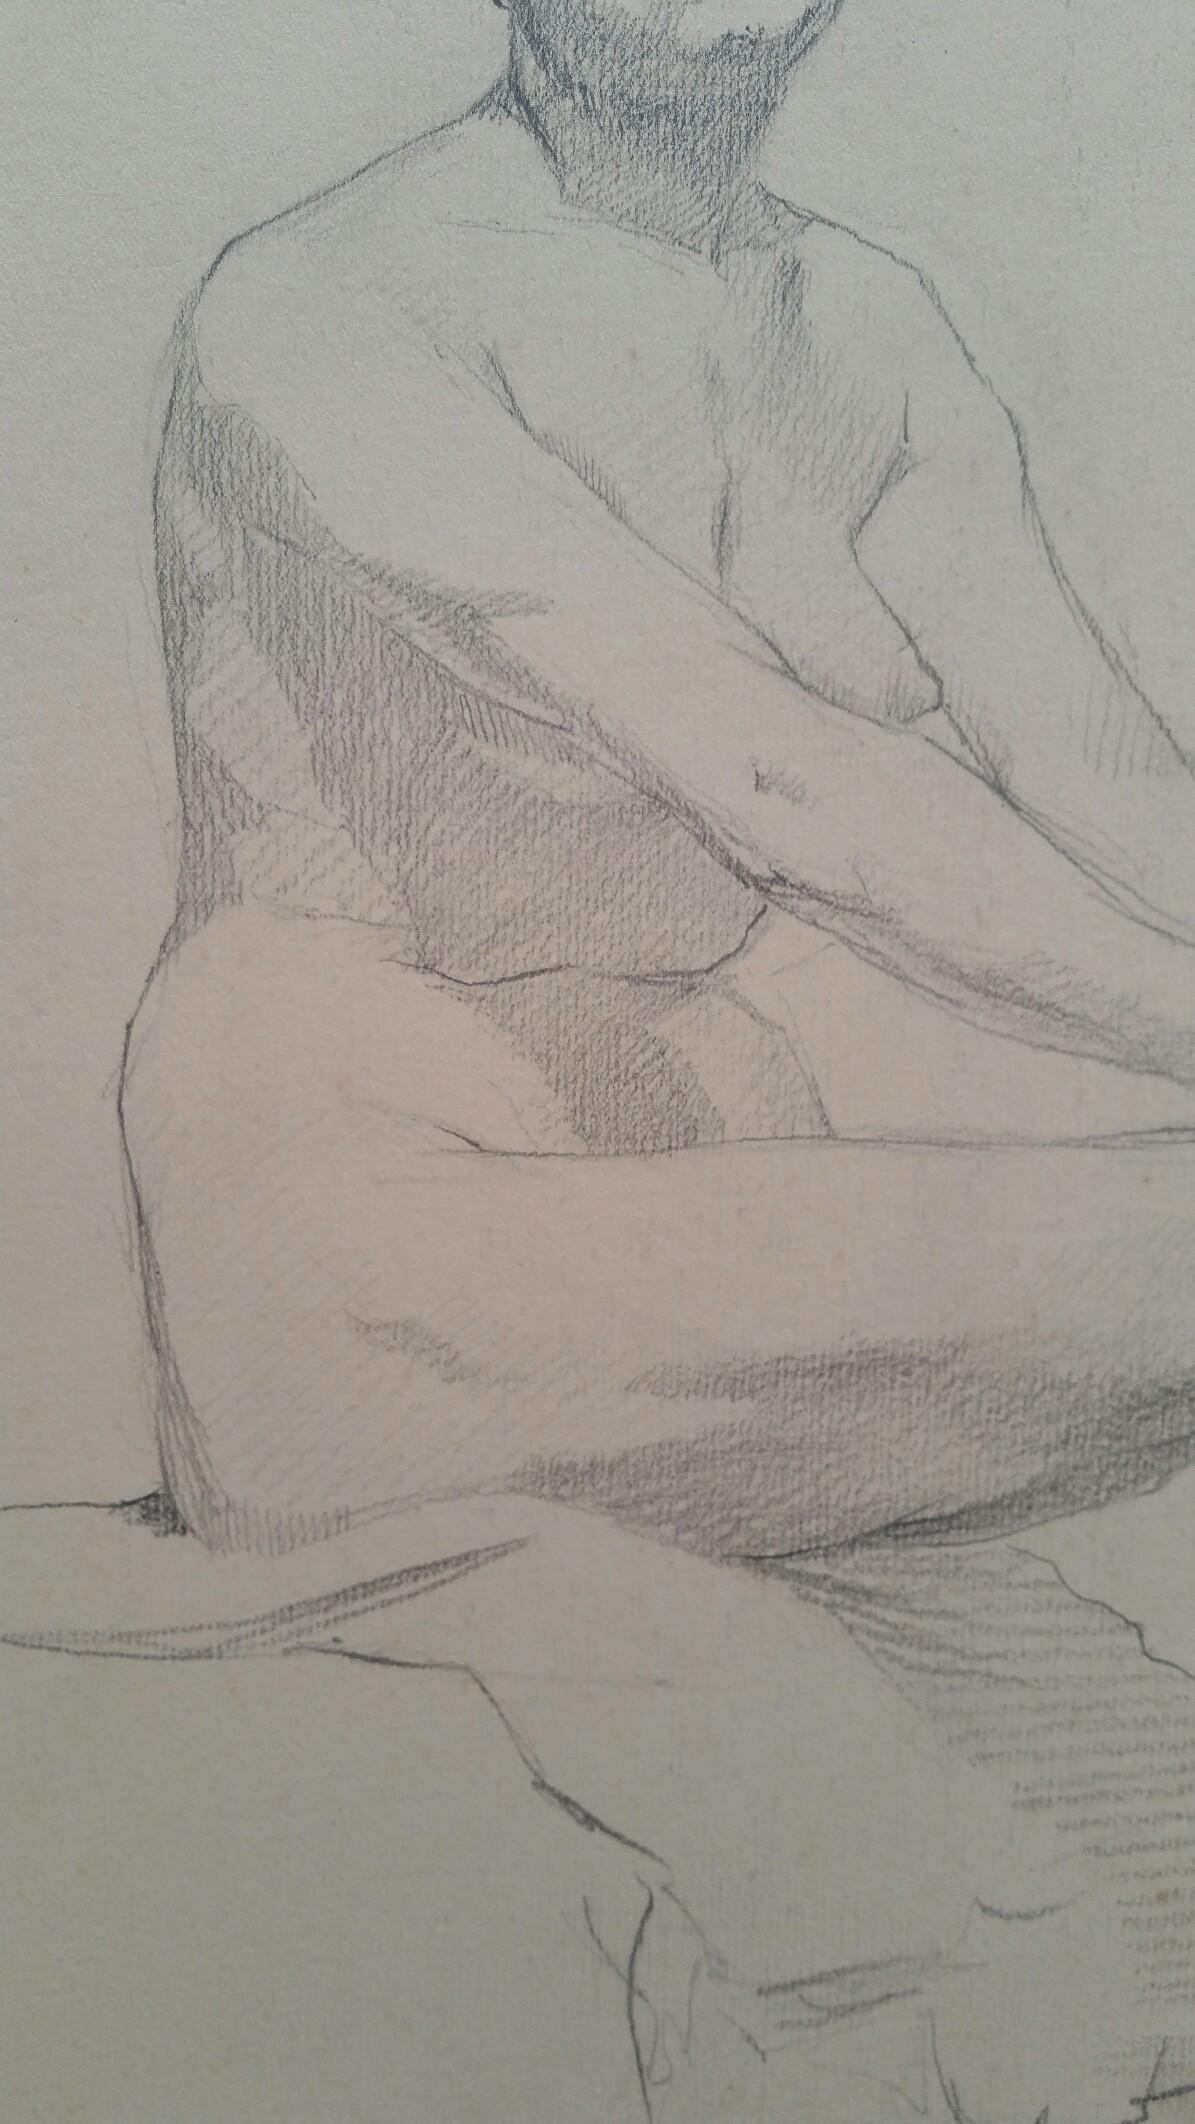 Esquisse à la mine de plomb d'une femme nue, assise de profil, anglaise
par Henry George Moon (britannique, 1857-1905)
sur papier d'artiste blanc cassé, non encadré
mesures : feuille 13.5 x 11 pouces 

provenance : de la succession de